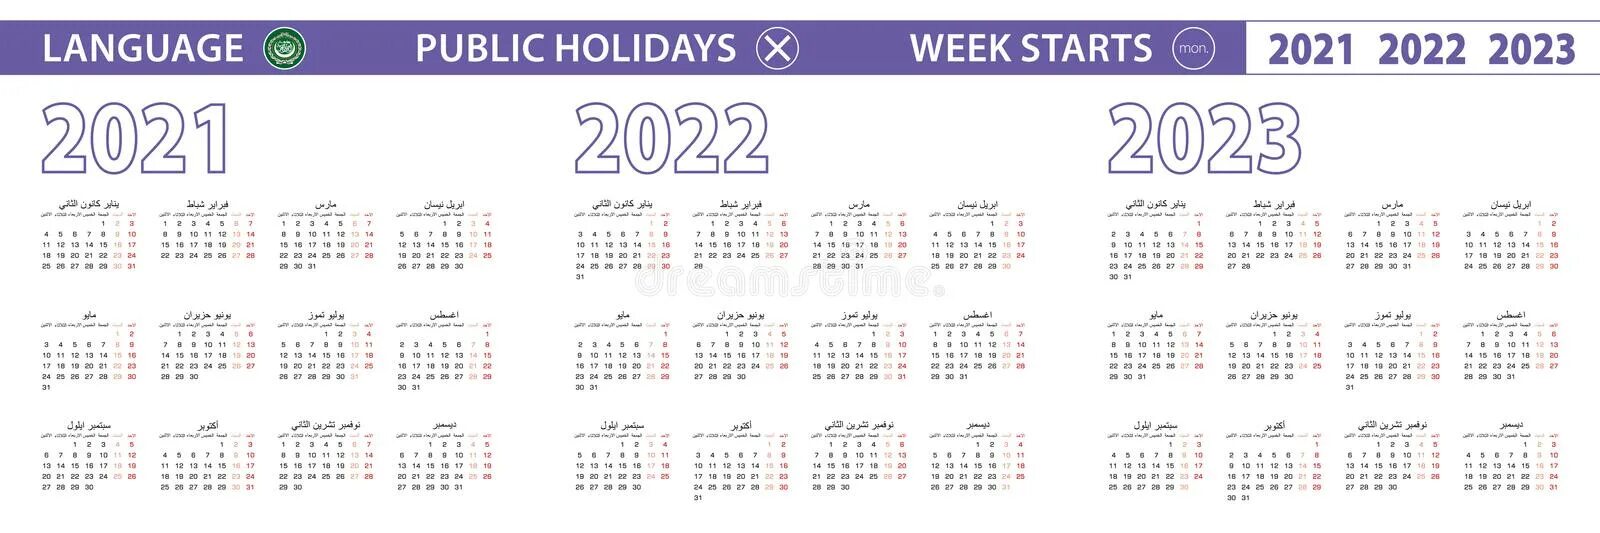 Какая сейчас неделя в году 2024. Календарь. 2022 Год с неделями. Календарь на 2023-2024 годы. Недели 2023 года.